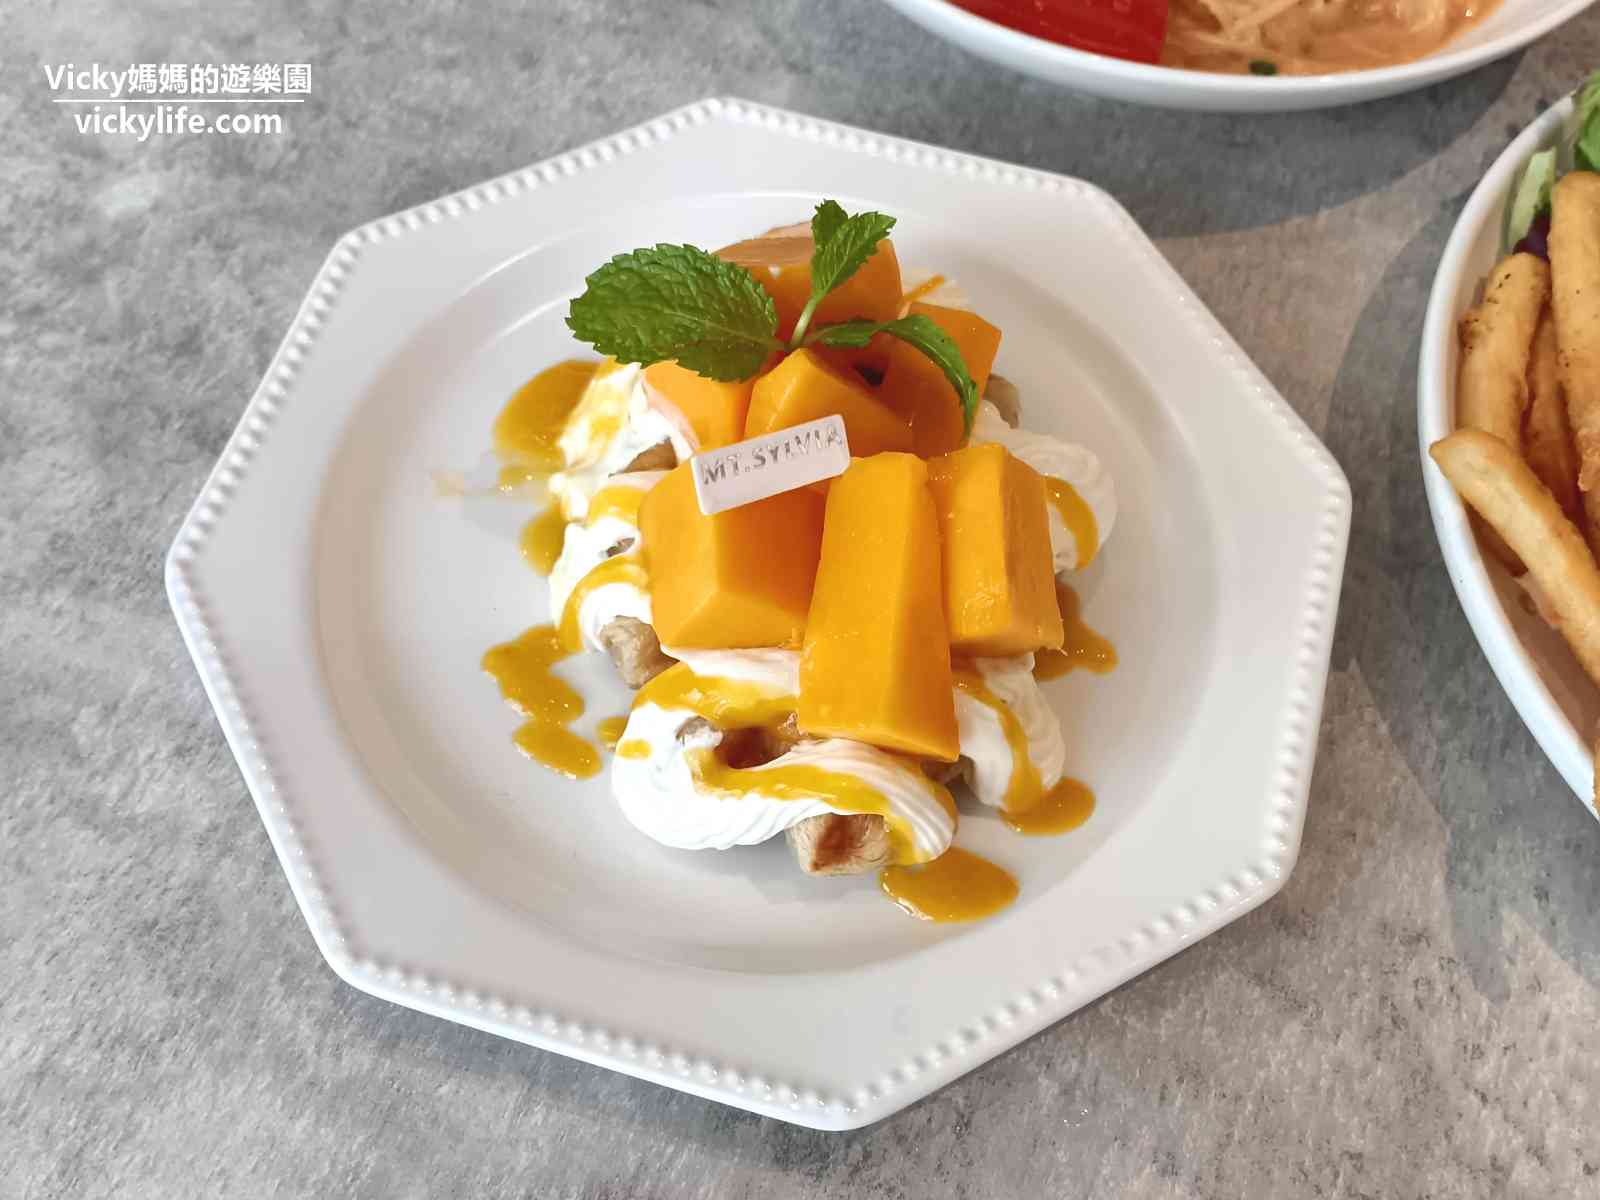 台南咖啡館︱MT.Sylvia Coffee 雪山貓：隱身於工業區內的絕美餐廳，從飲品到餐點再到甜點，每樣都好精緻(菜單)